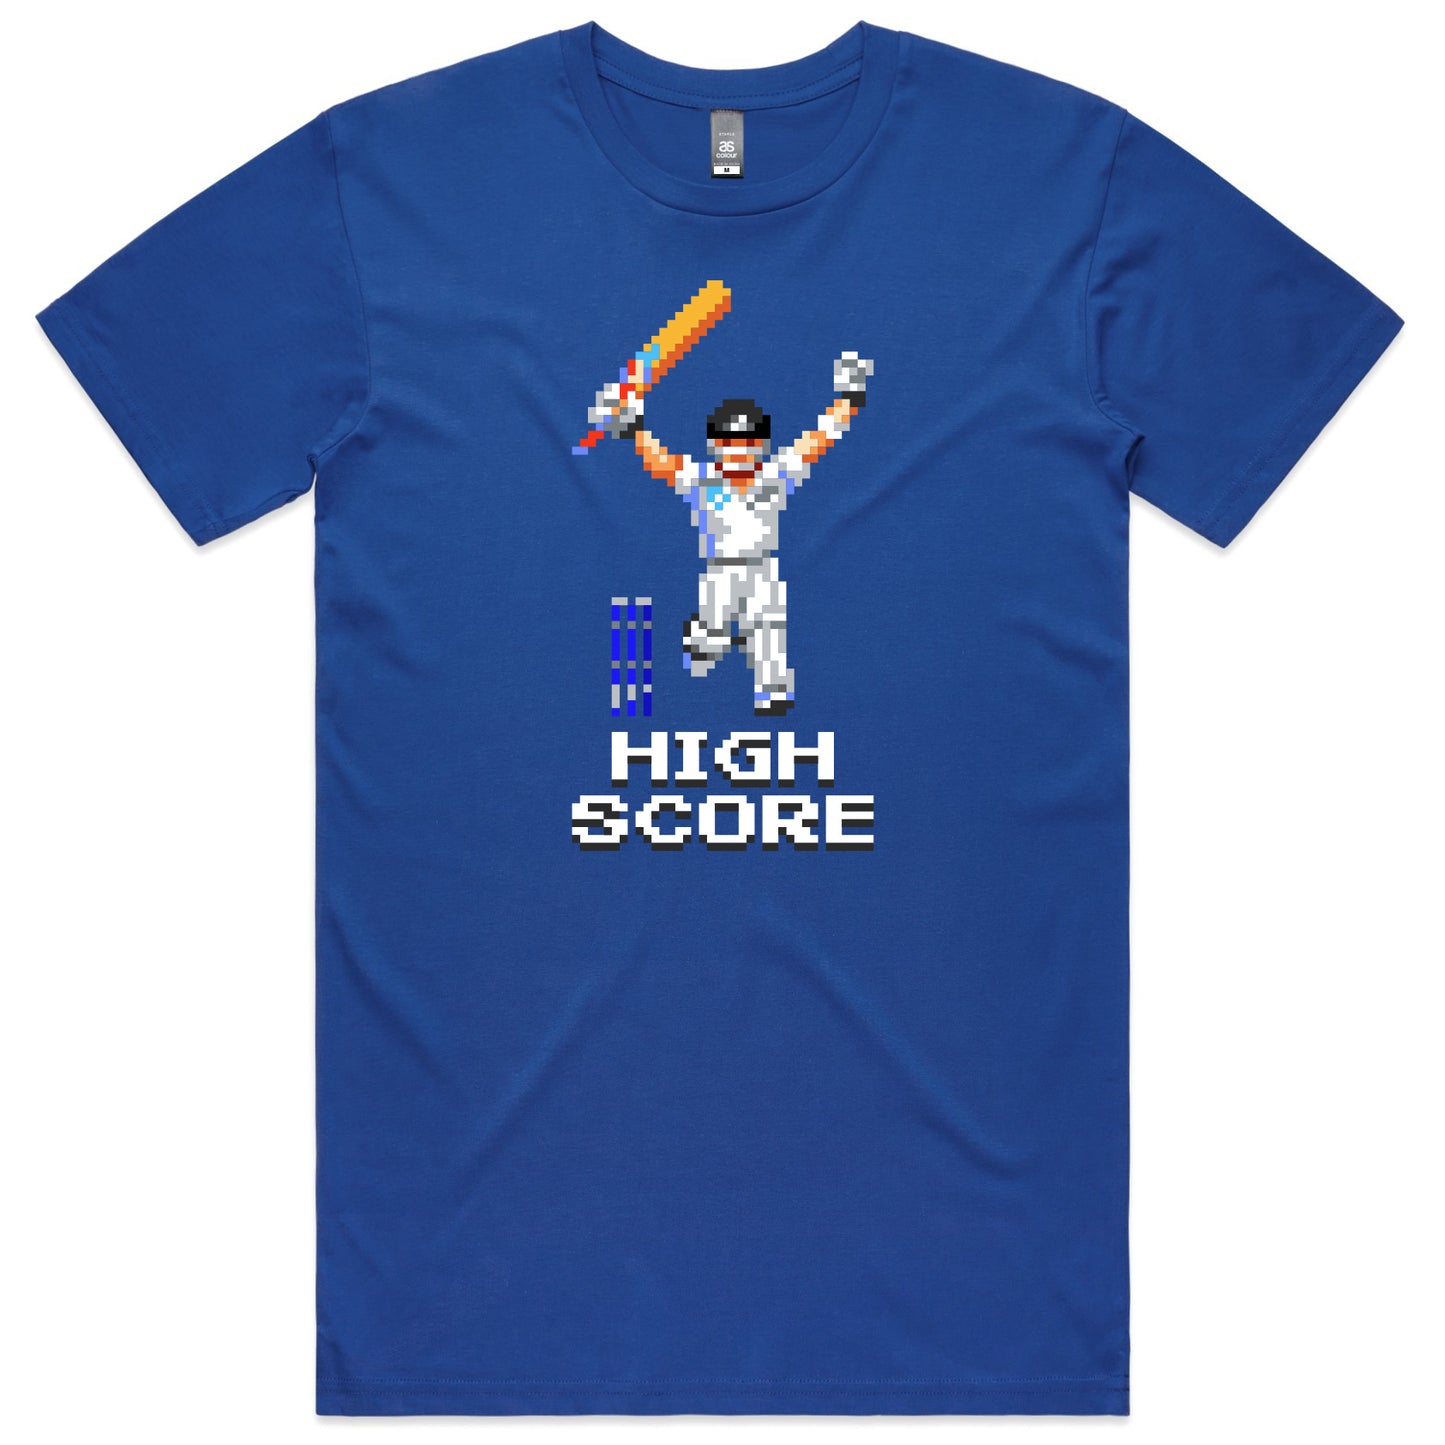 High Score cricket blue t-shirt mens